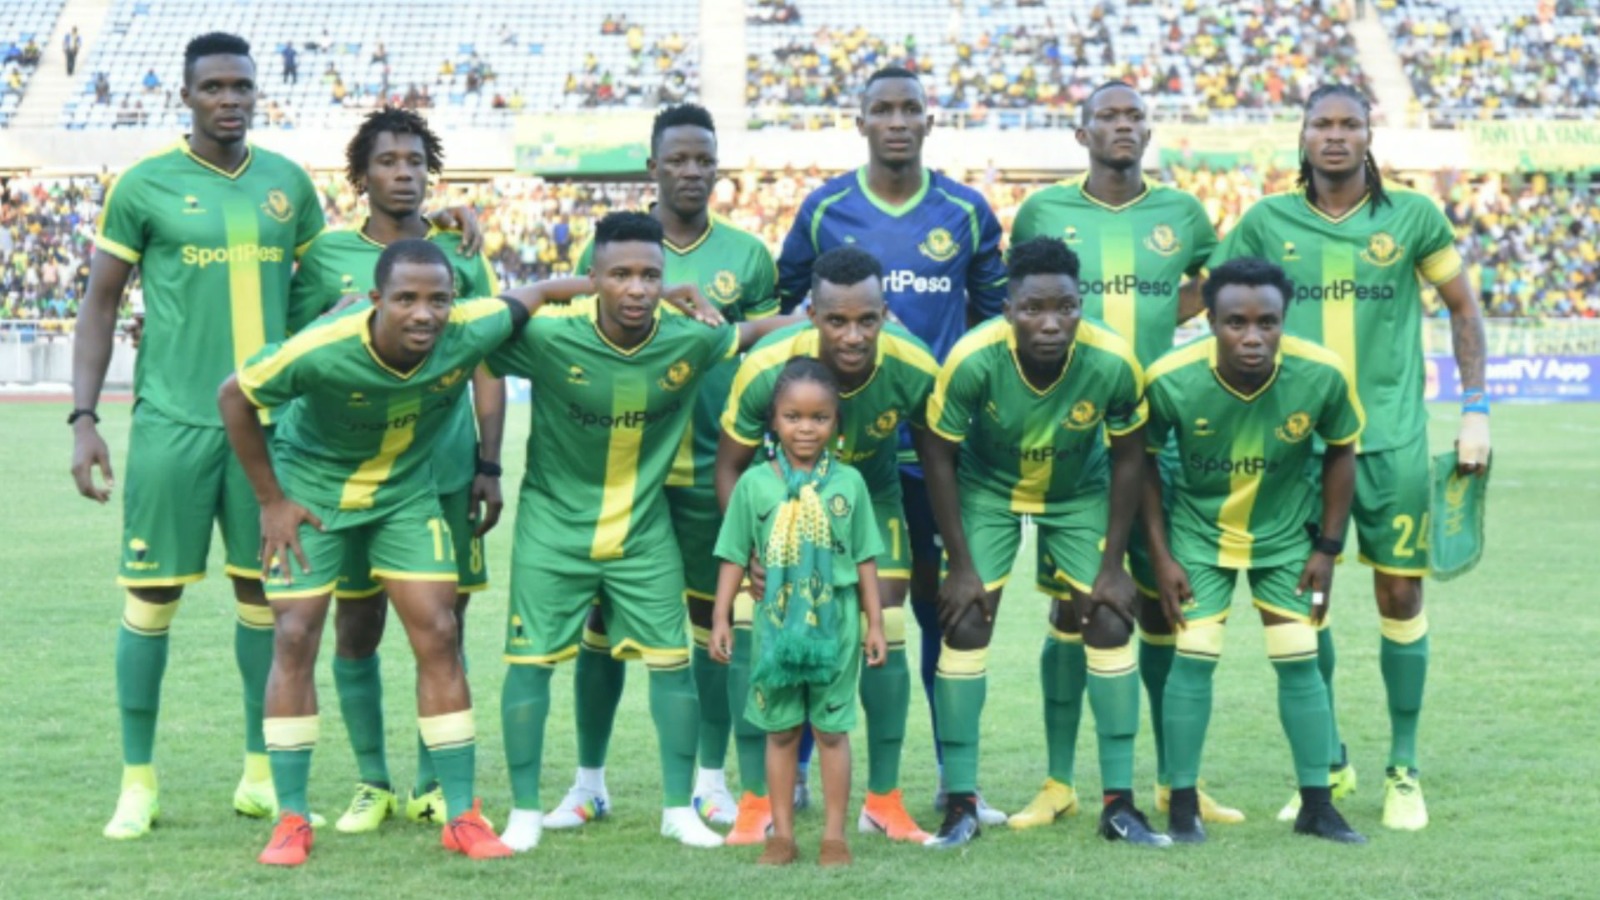 El Young Africans SC es el club más laureado de Tanzania